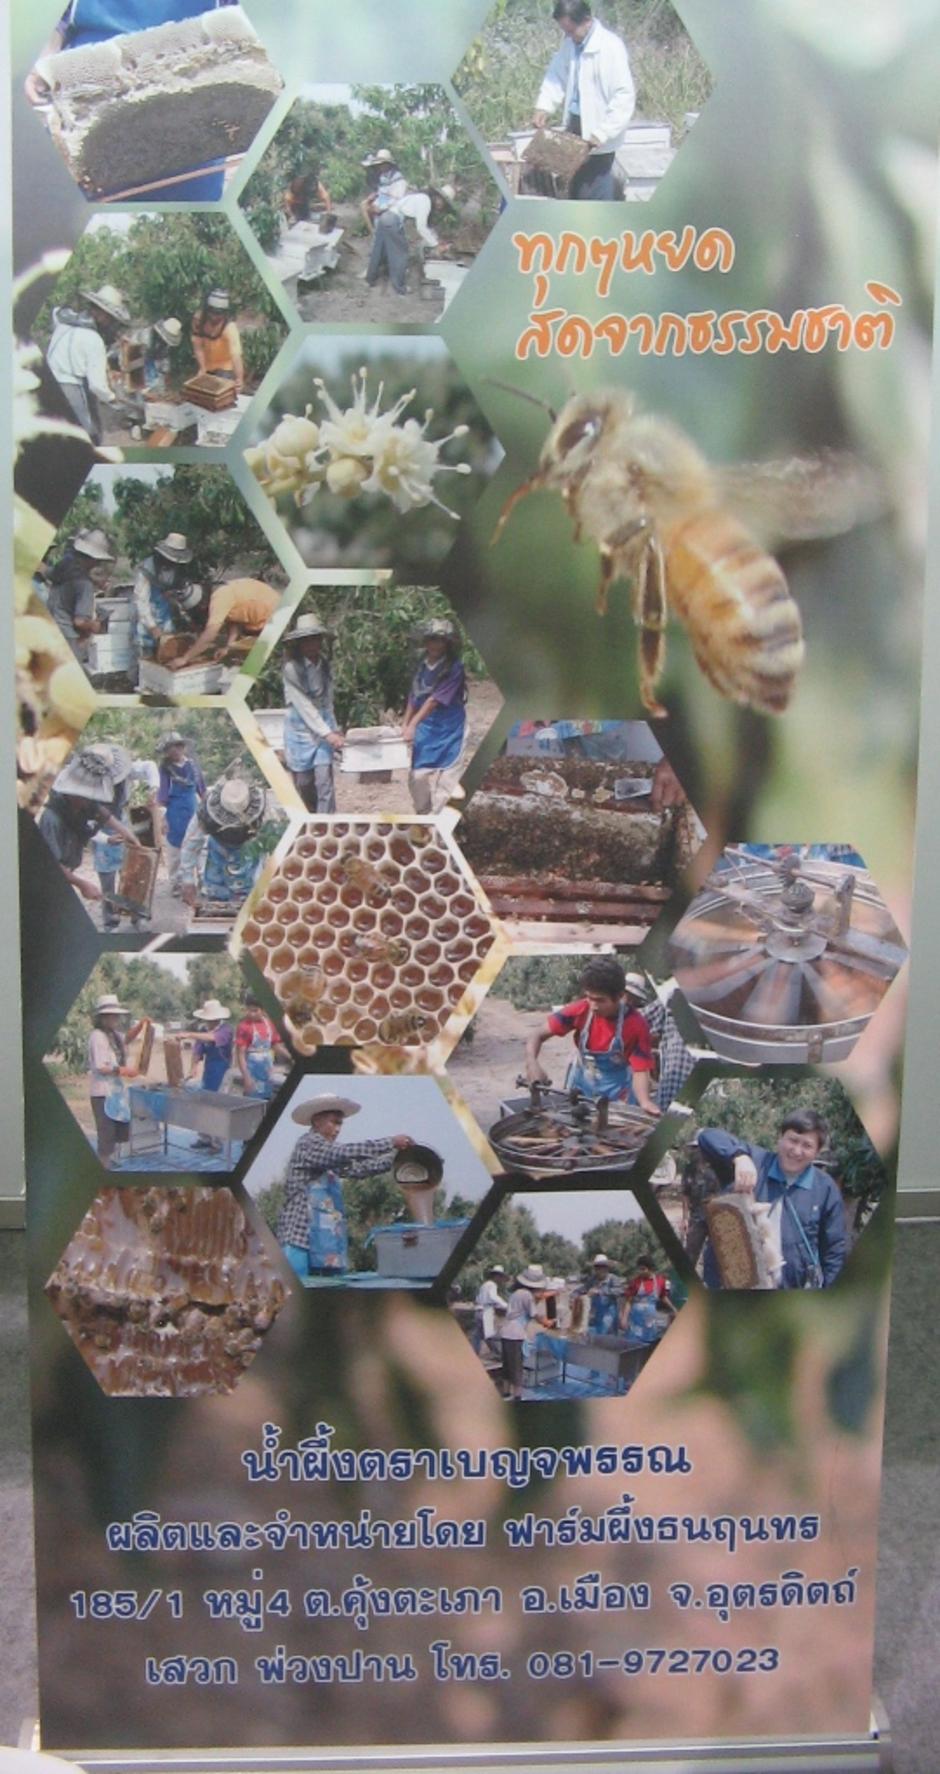 การเลี้ยงผึ้งเพื่อผลิตน้ำผึ้ง